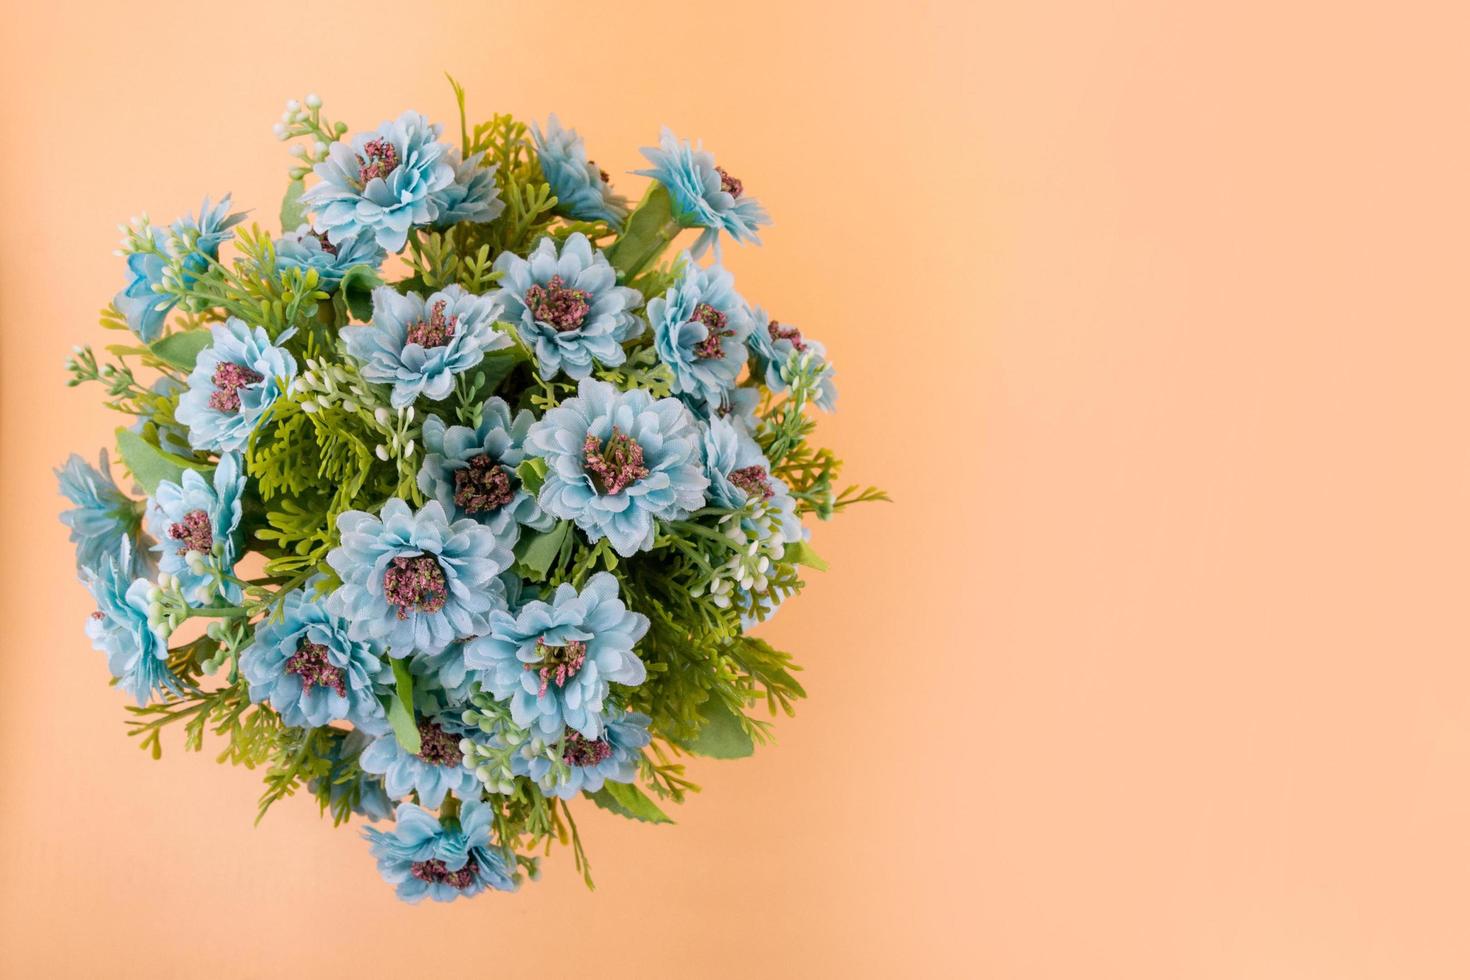 künstliche Blumenstraußdekoration, Raumhintergrund kopieren foto